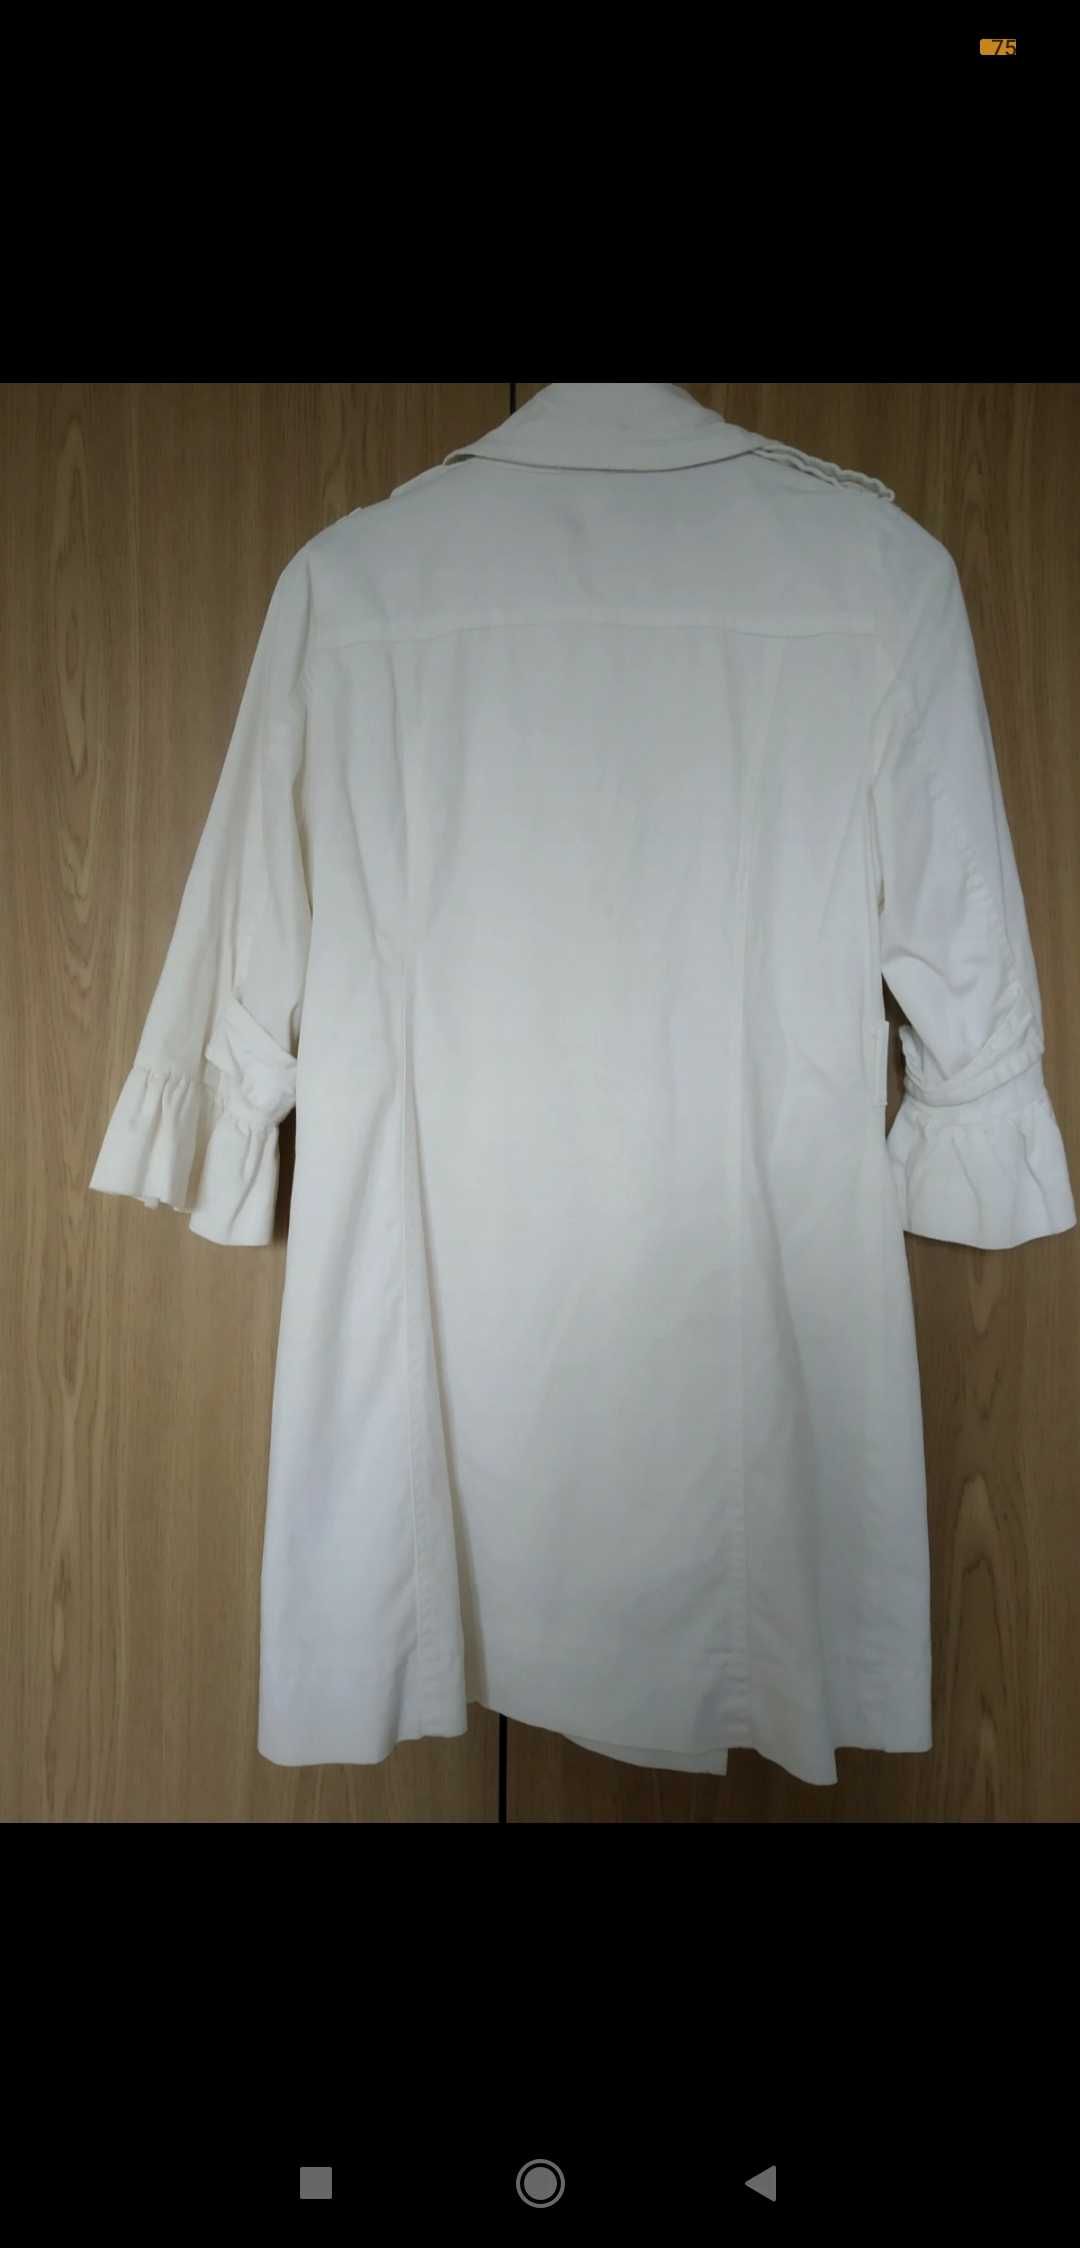 Damski biały płaszczyk rozmiar M